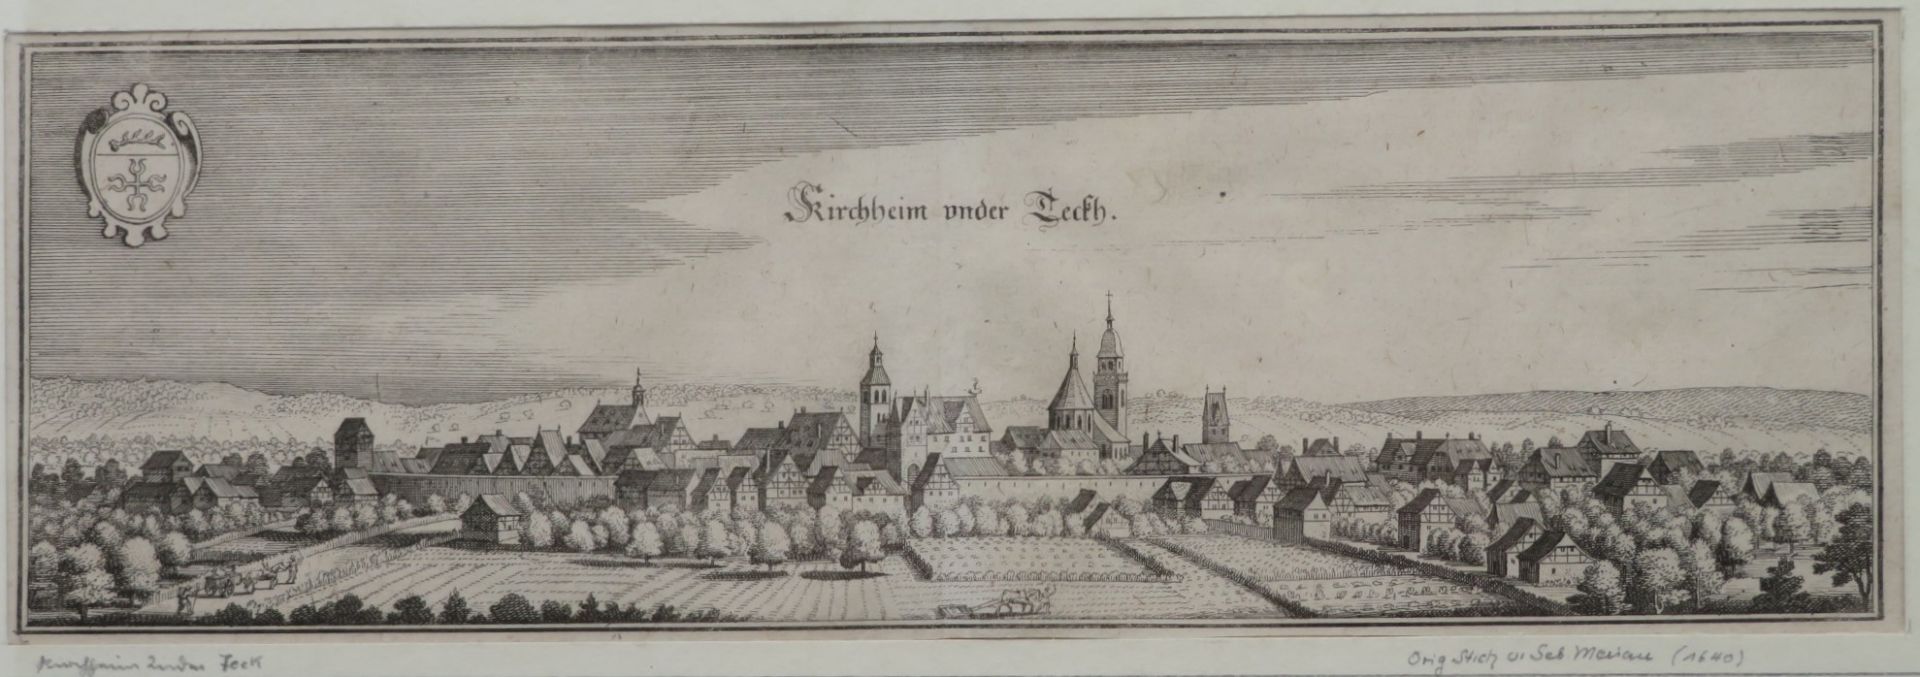 Merian, Sebastian, 1593 - 1650, Basel - Schwalbach, Schweizer Kupferstecher, Buchhändler und Verleg